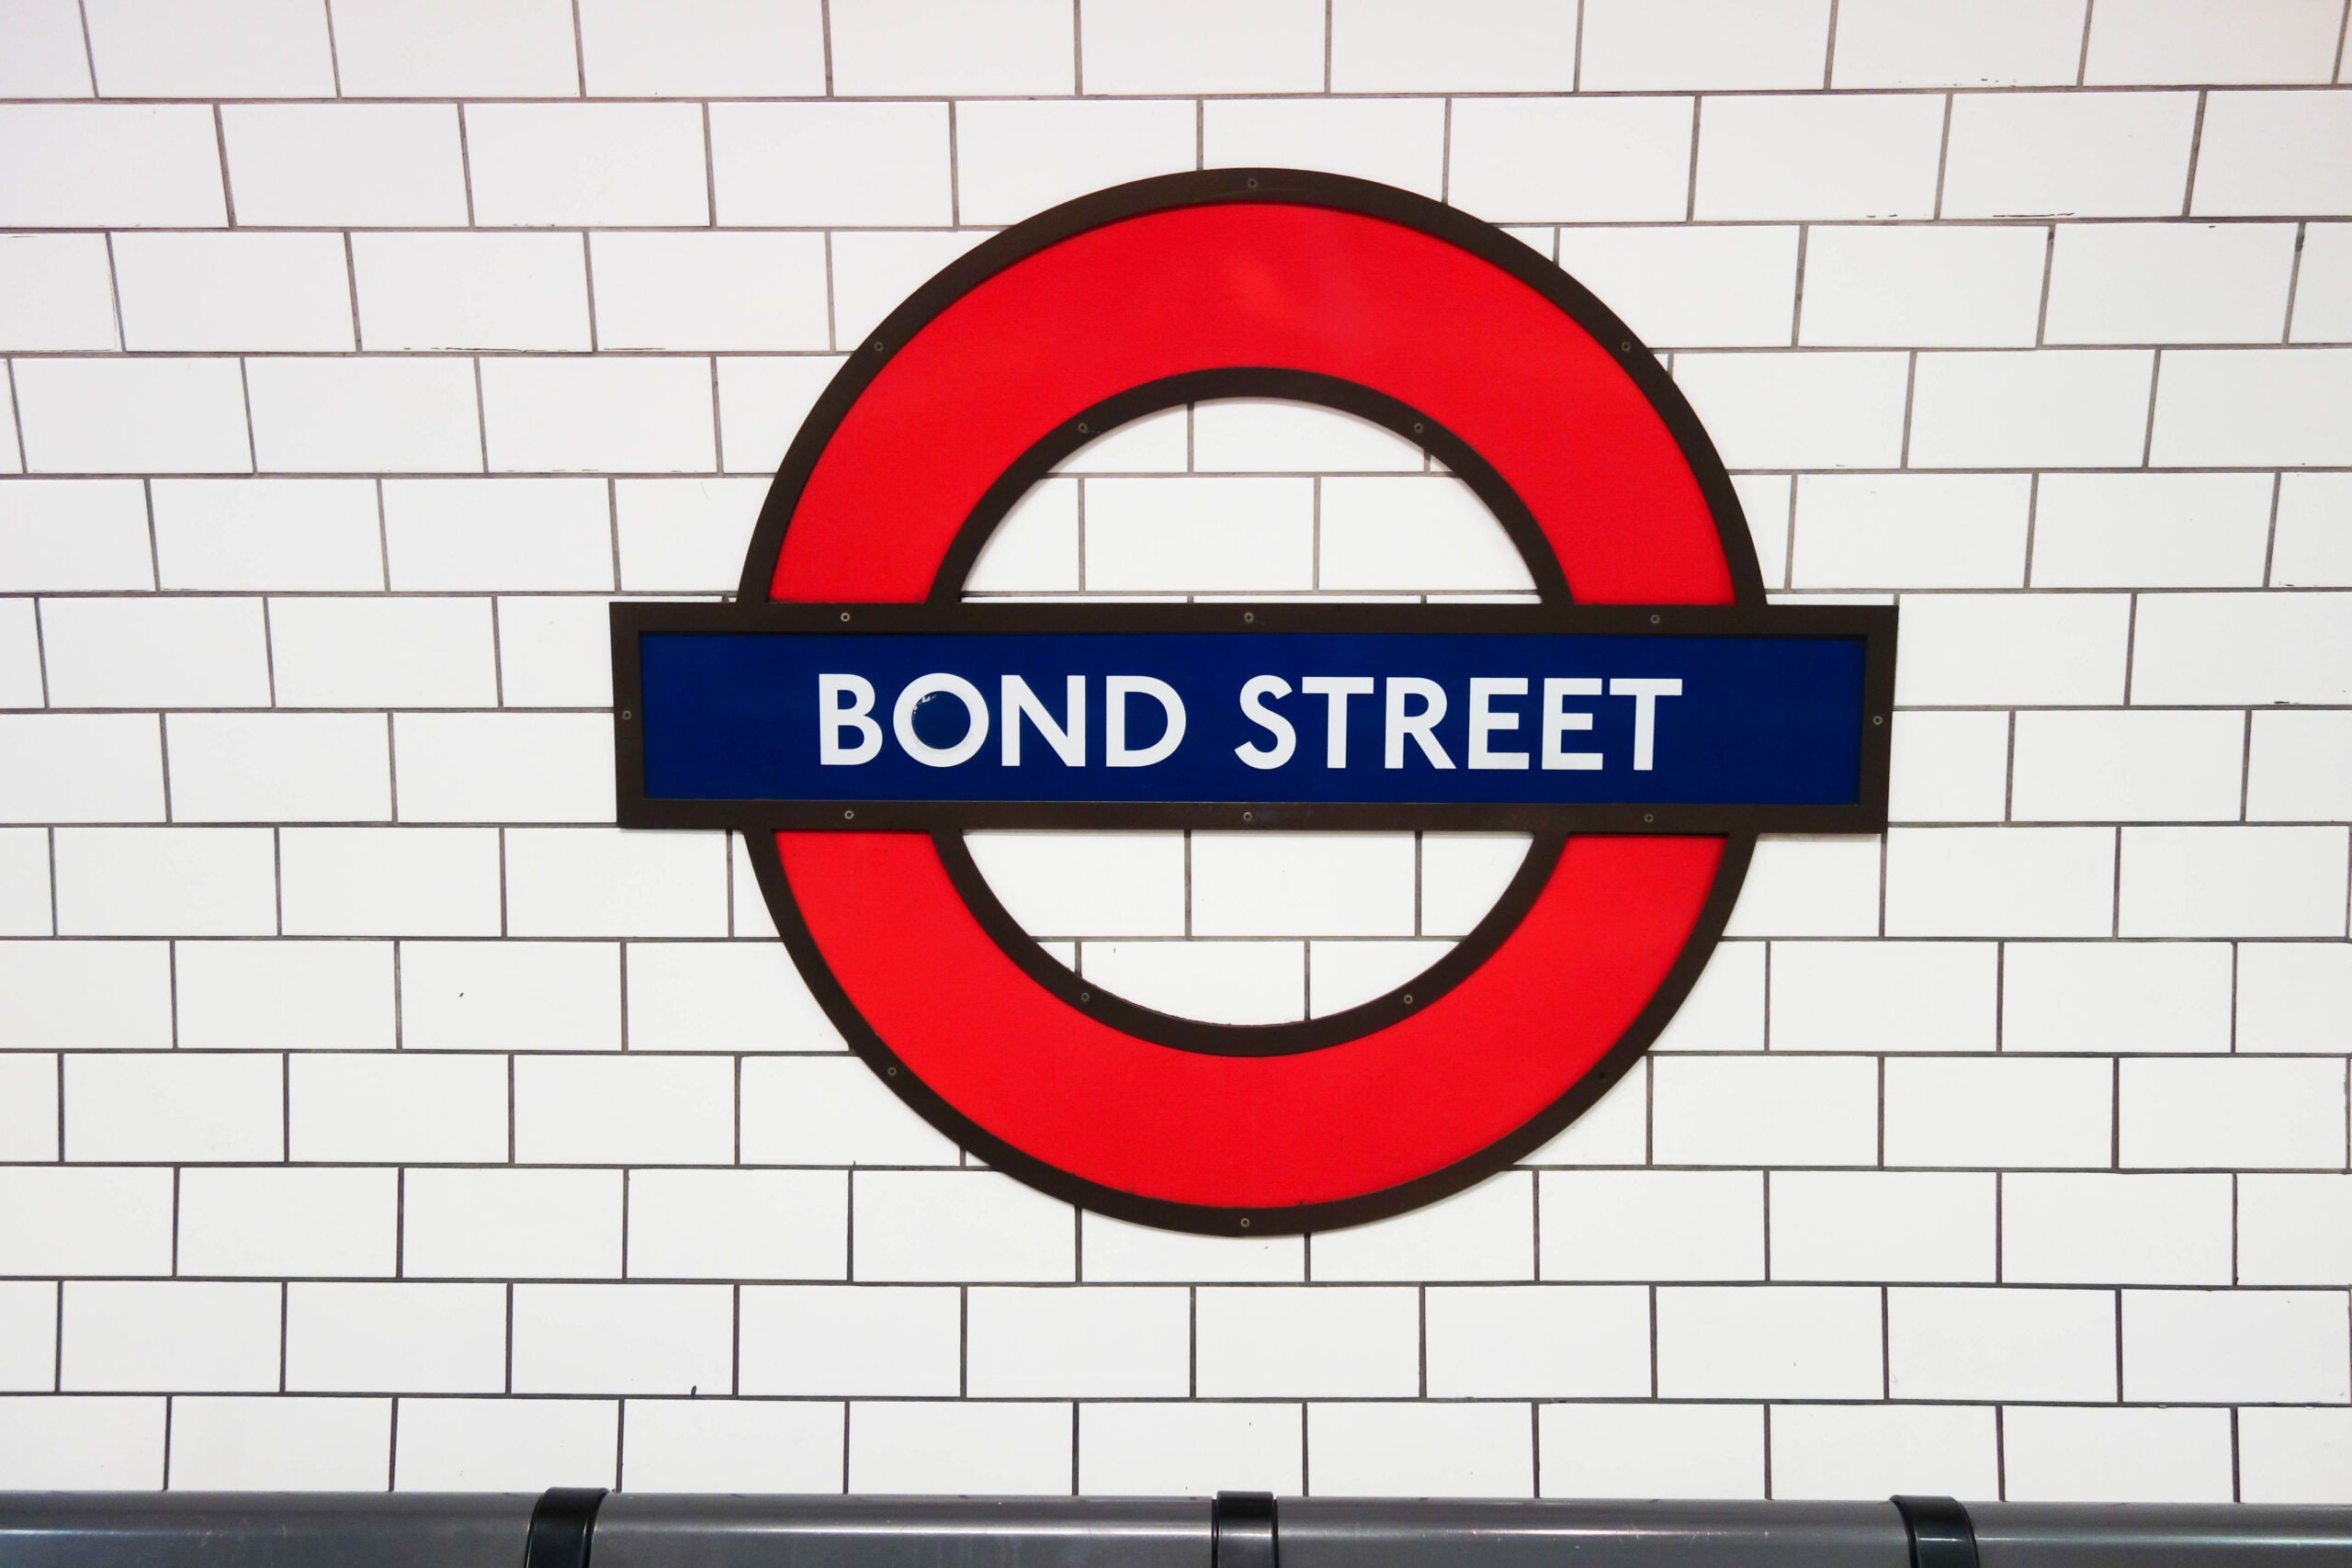 Bond Street Elizabeth Line station date confirmed